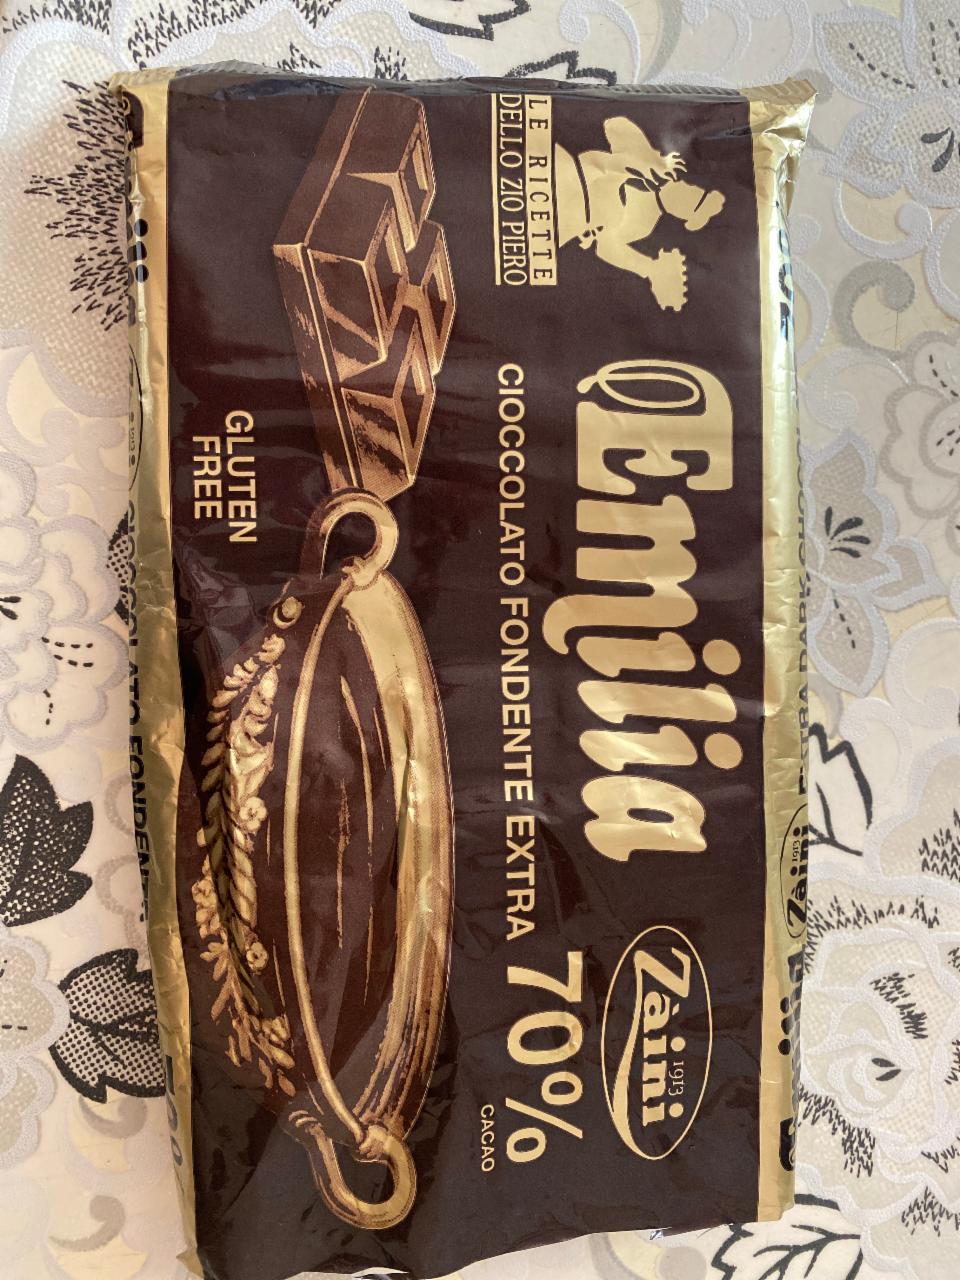 Фото - Темный шоколад Emilia Estra 70% какао Zàini